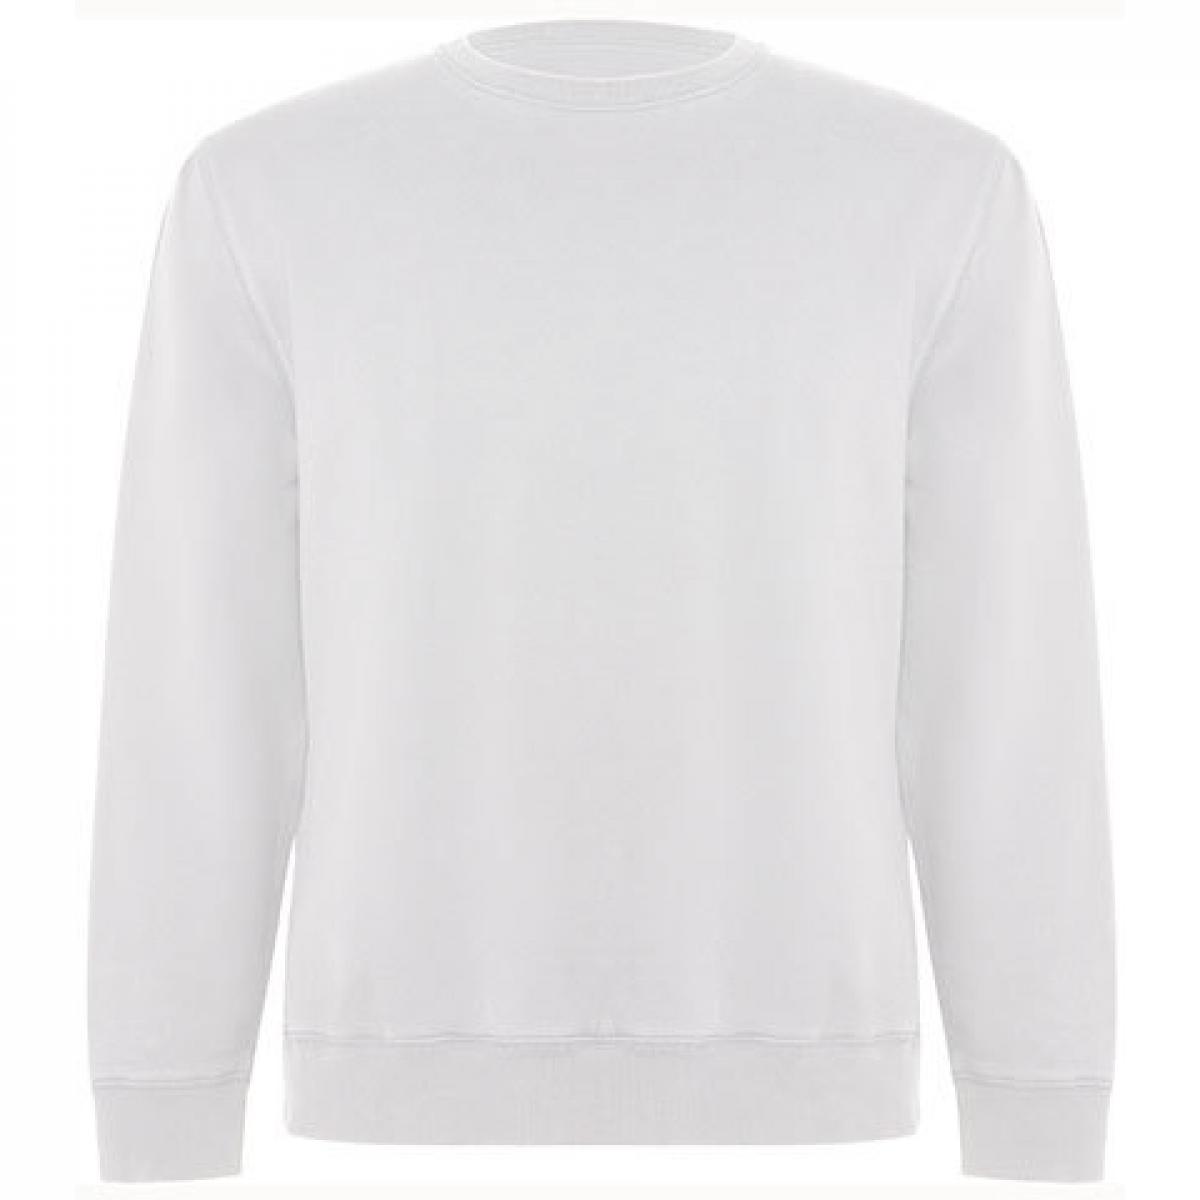 Hersteller: Roly Eco Herstellernummer: SU1071 Artikelbezeichnung: Batian Organic Sweatshirt - Unisex Farbe: White 01